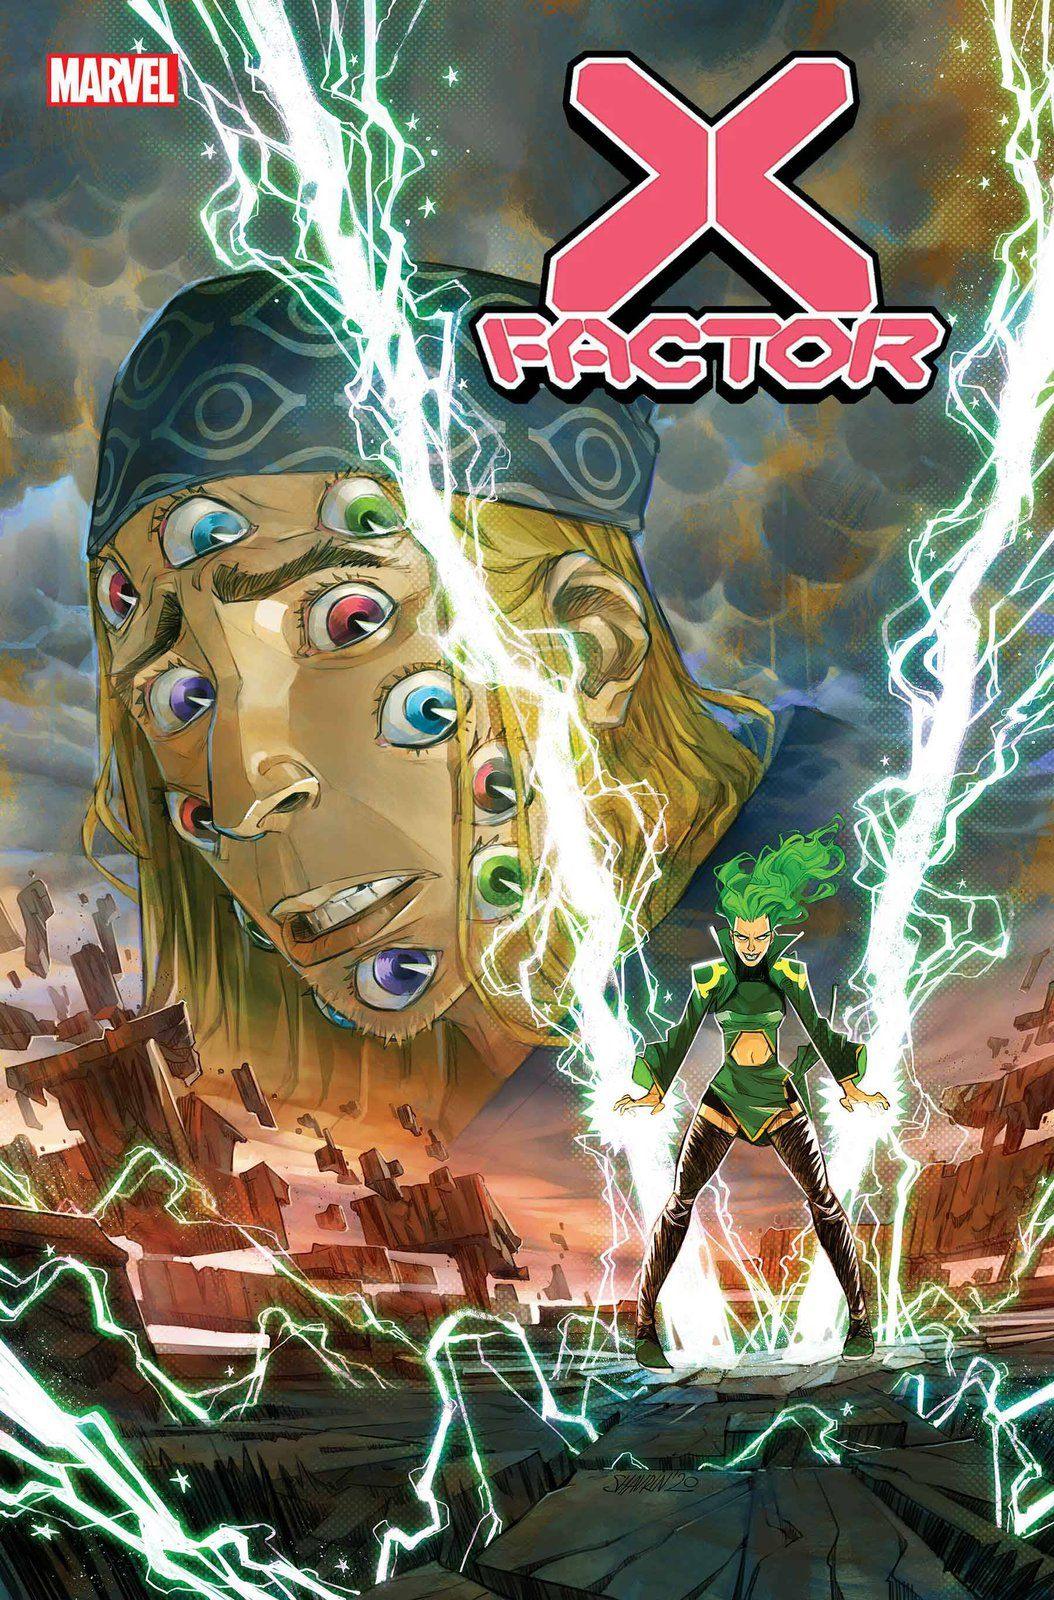 X-FACTOR #7 (SHIPS 02-03-21) - PCKComics.com